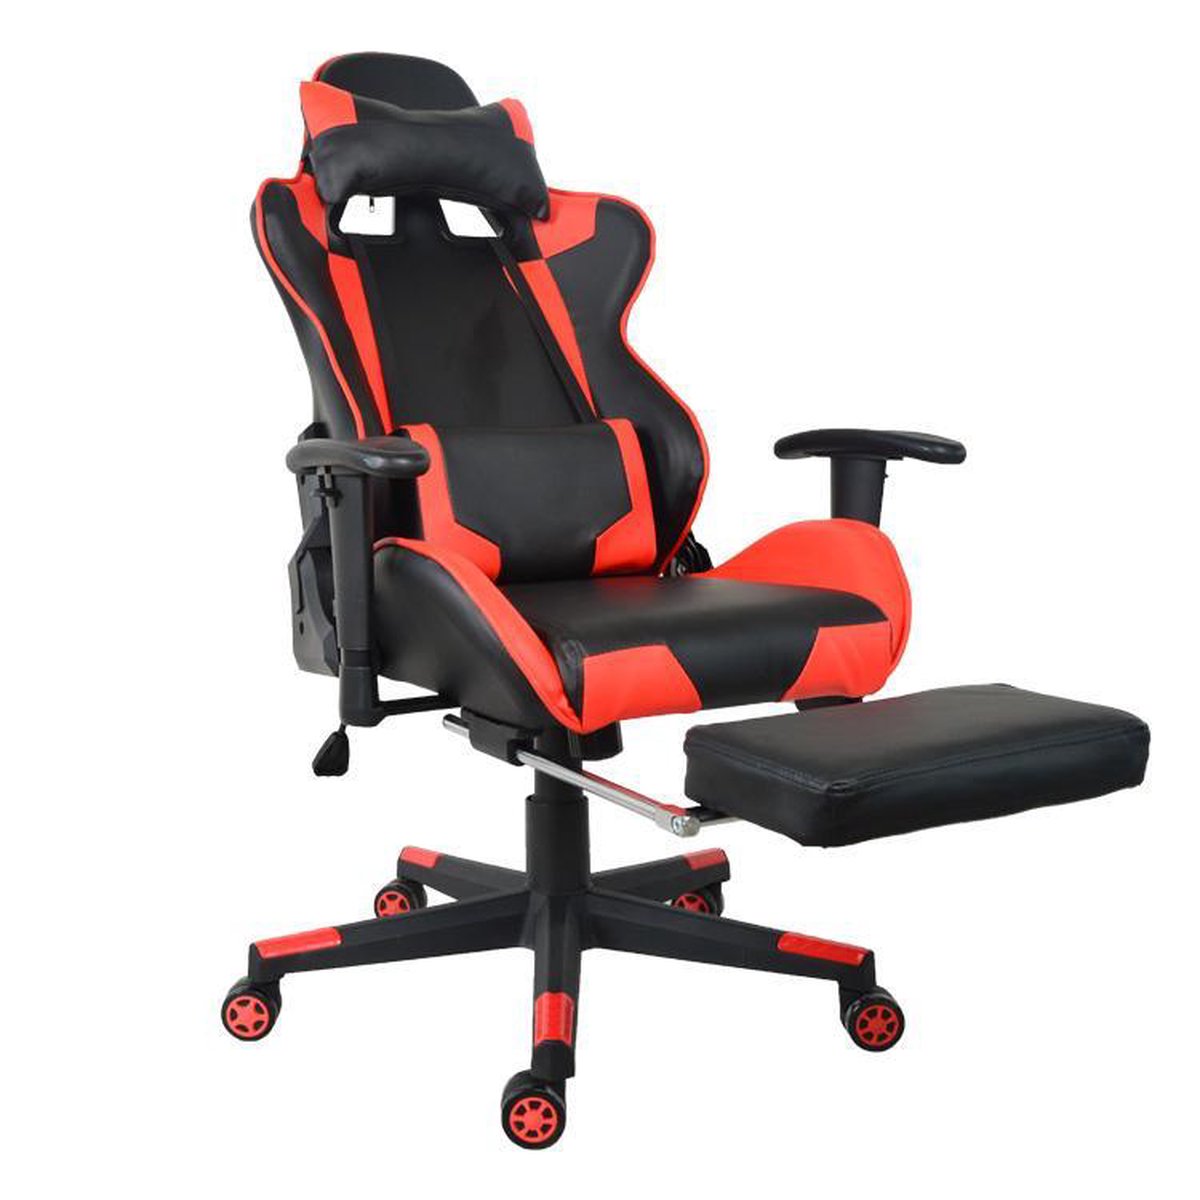 Gamestoel Thomas met voetsteun - bureaustoel racing gaming - ergonomisch - zwart rood